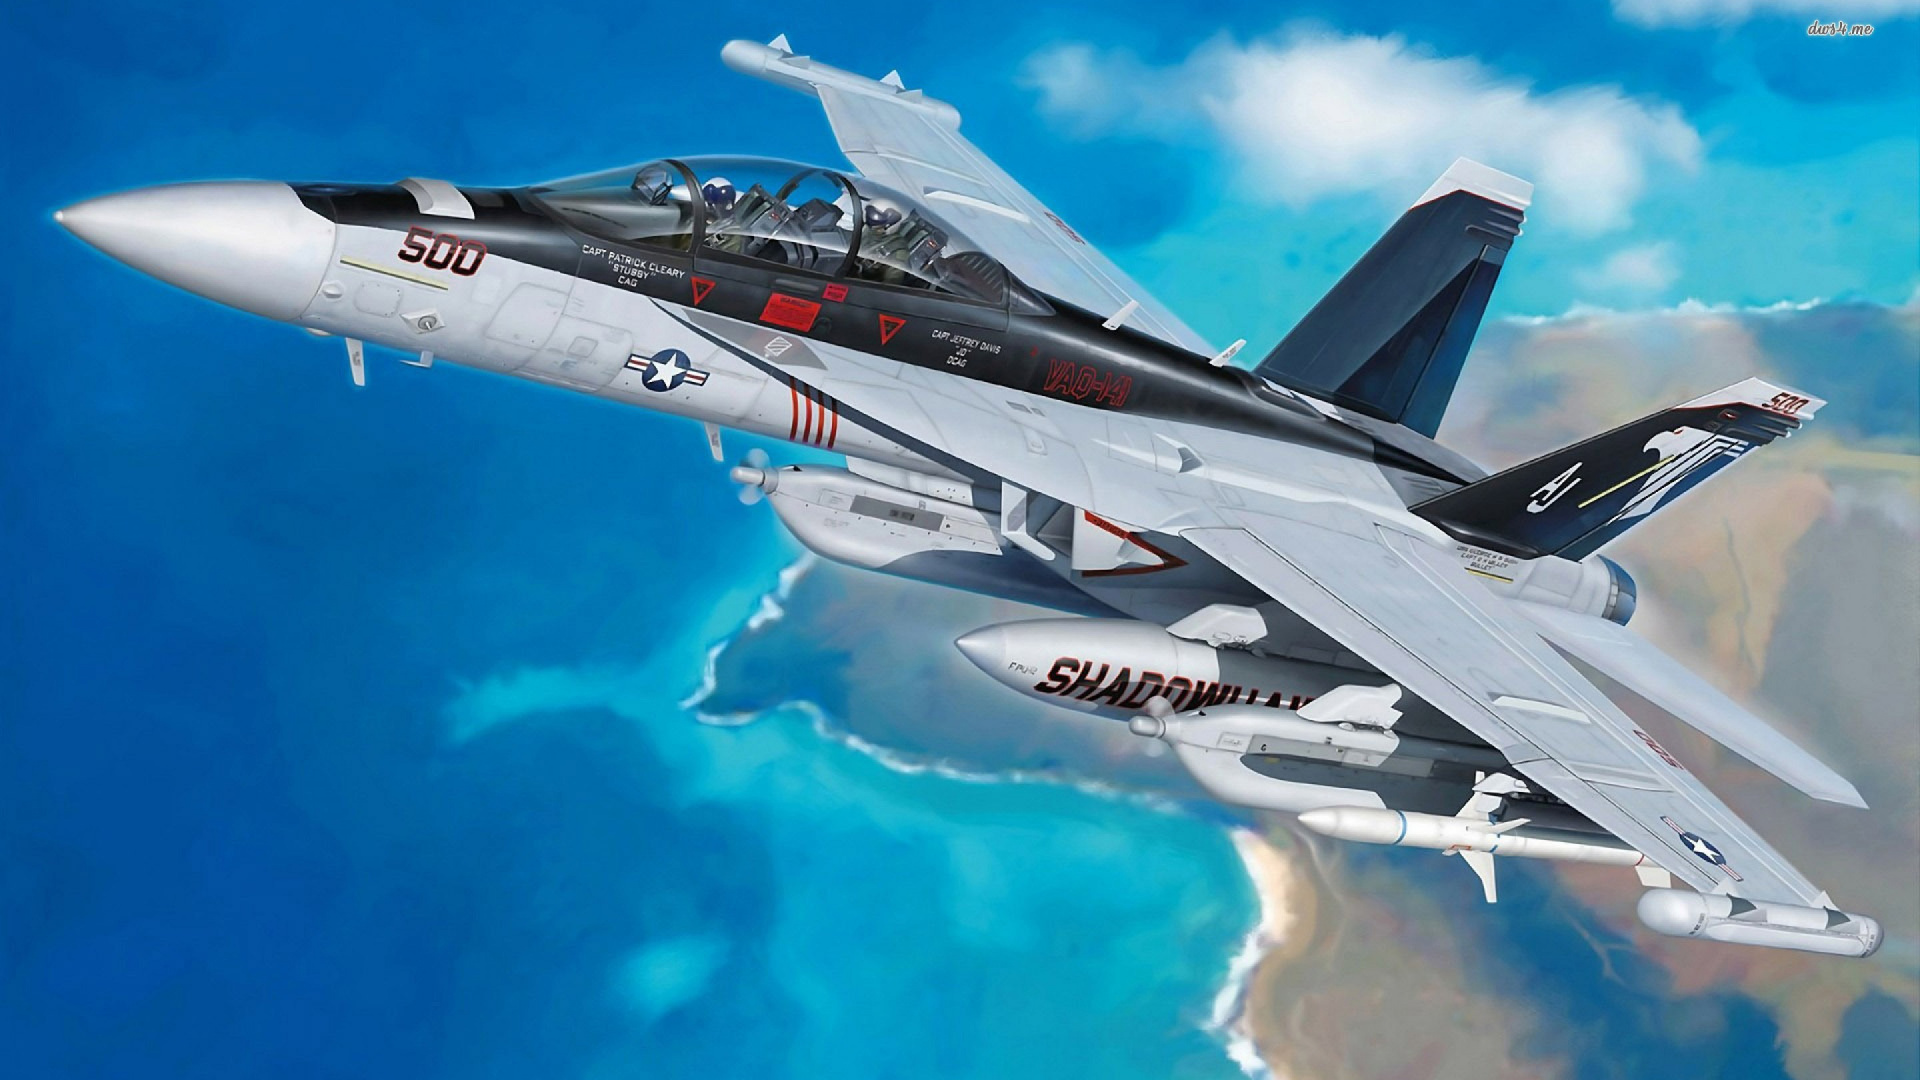 波音F-18E F超级大黄蜂, 军用飞机, 空军, 航空, 航空航天制造商 壁纸 1920x1080 允许